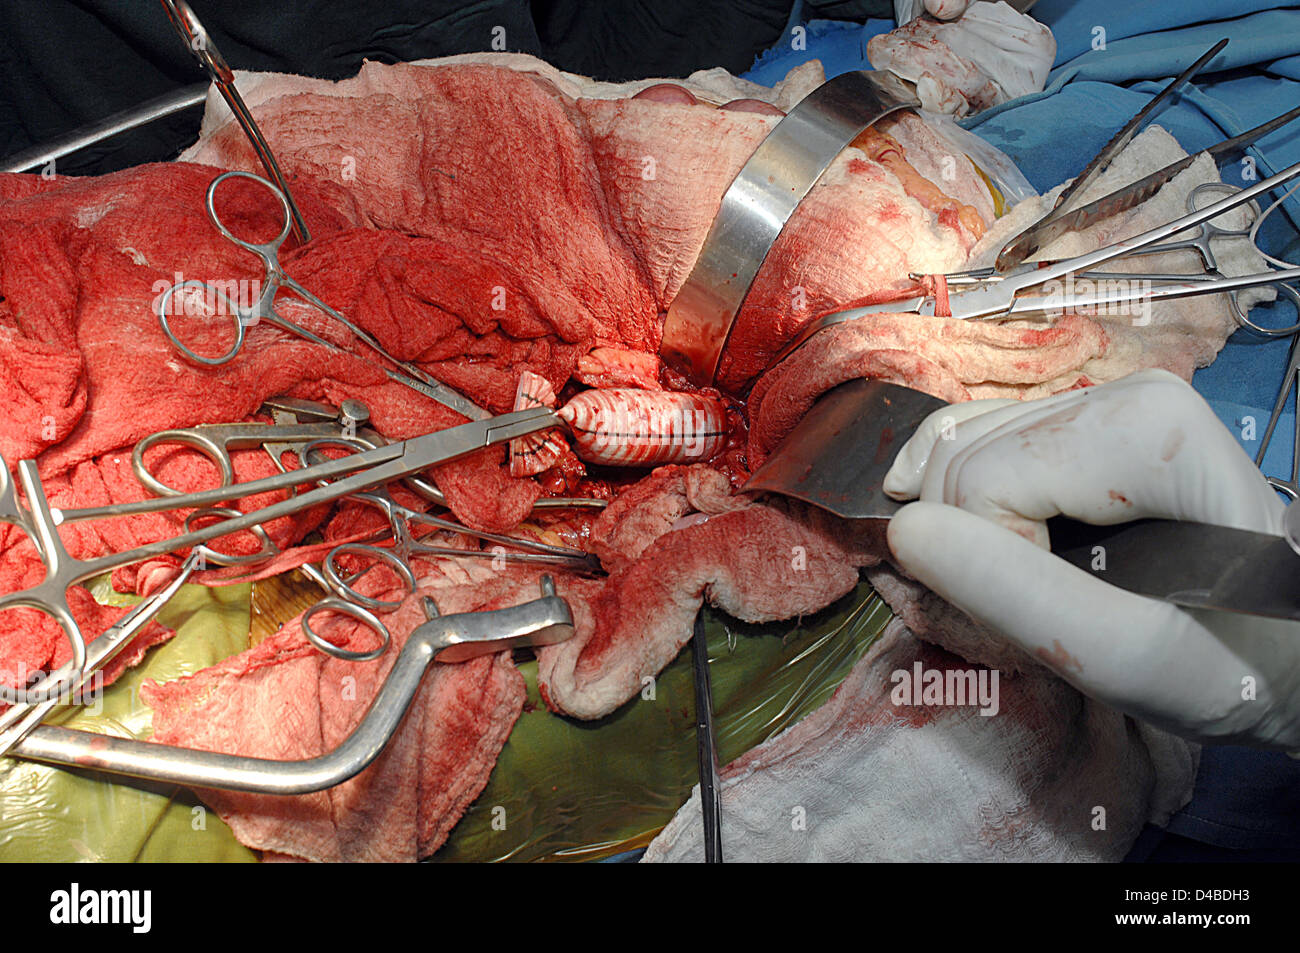 Los cirujanos completando con anastomosis proximal sujetada injerto distalmente Foto de stock